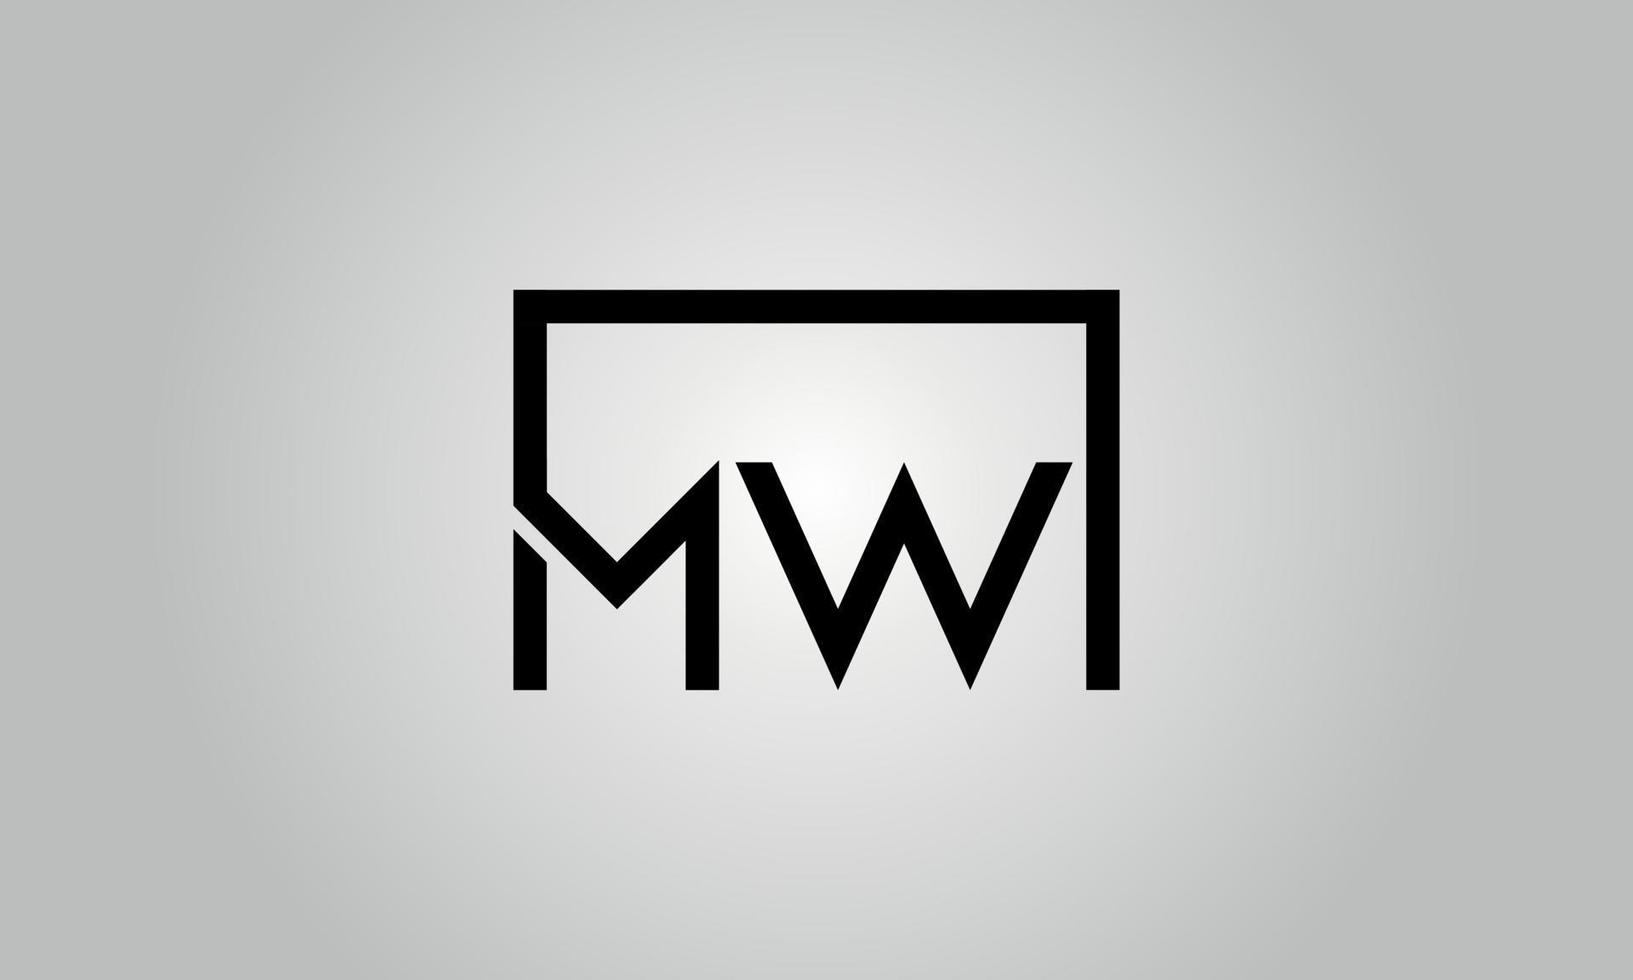 brief mw logo ontwerp. mw logo met plein vorm in zwart kleuren vector vrij vector sjabloon.